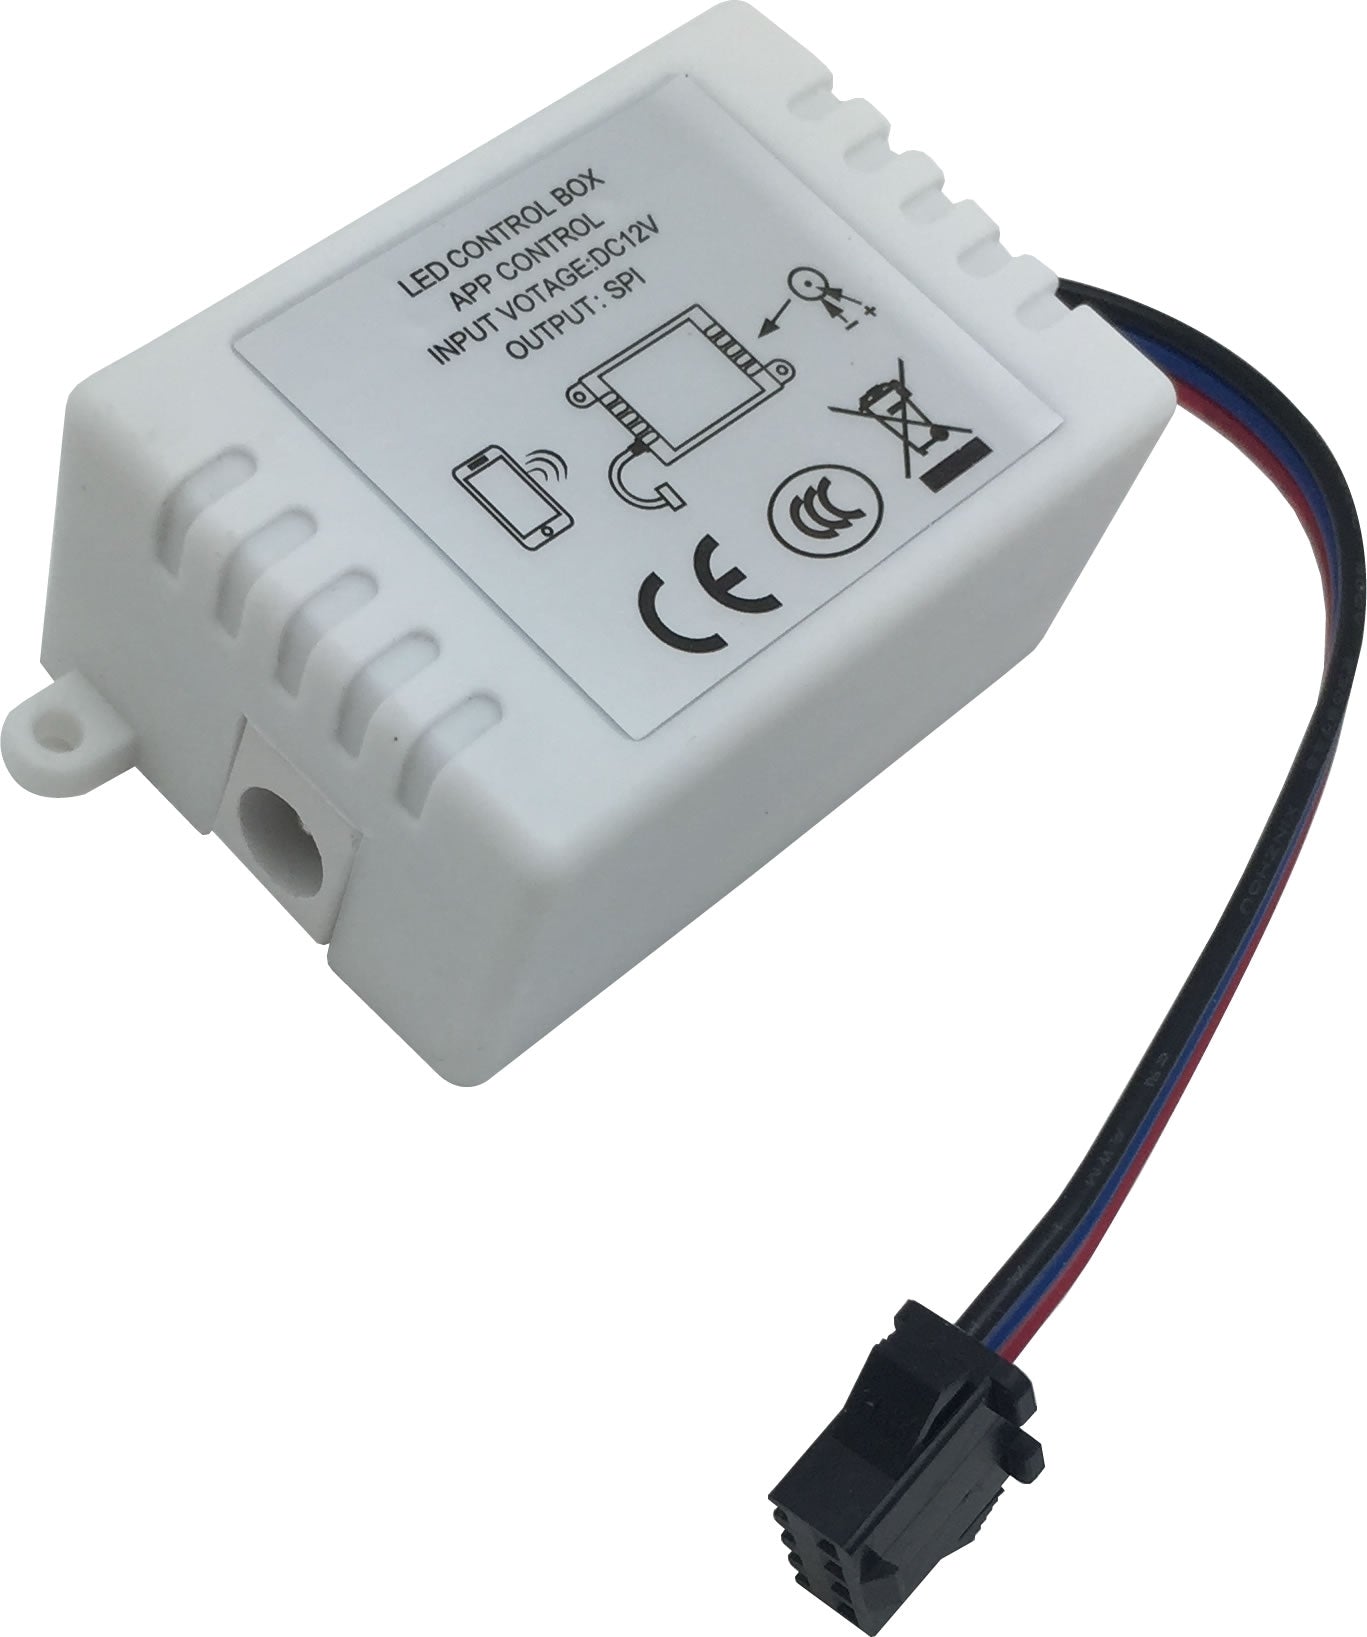 97-5050-02 CRGB LED Strip Bluetooth Controller